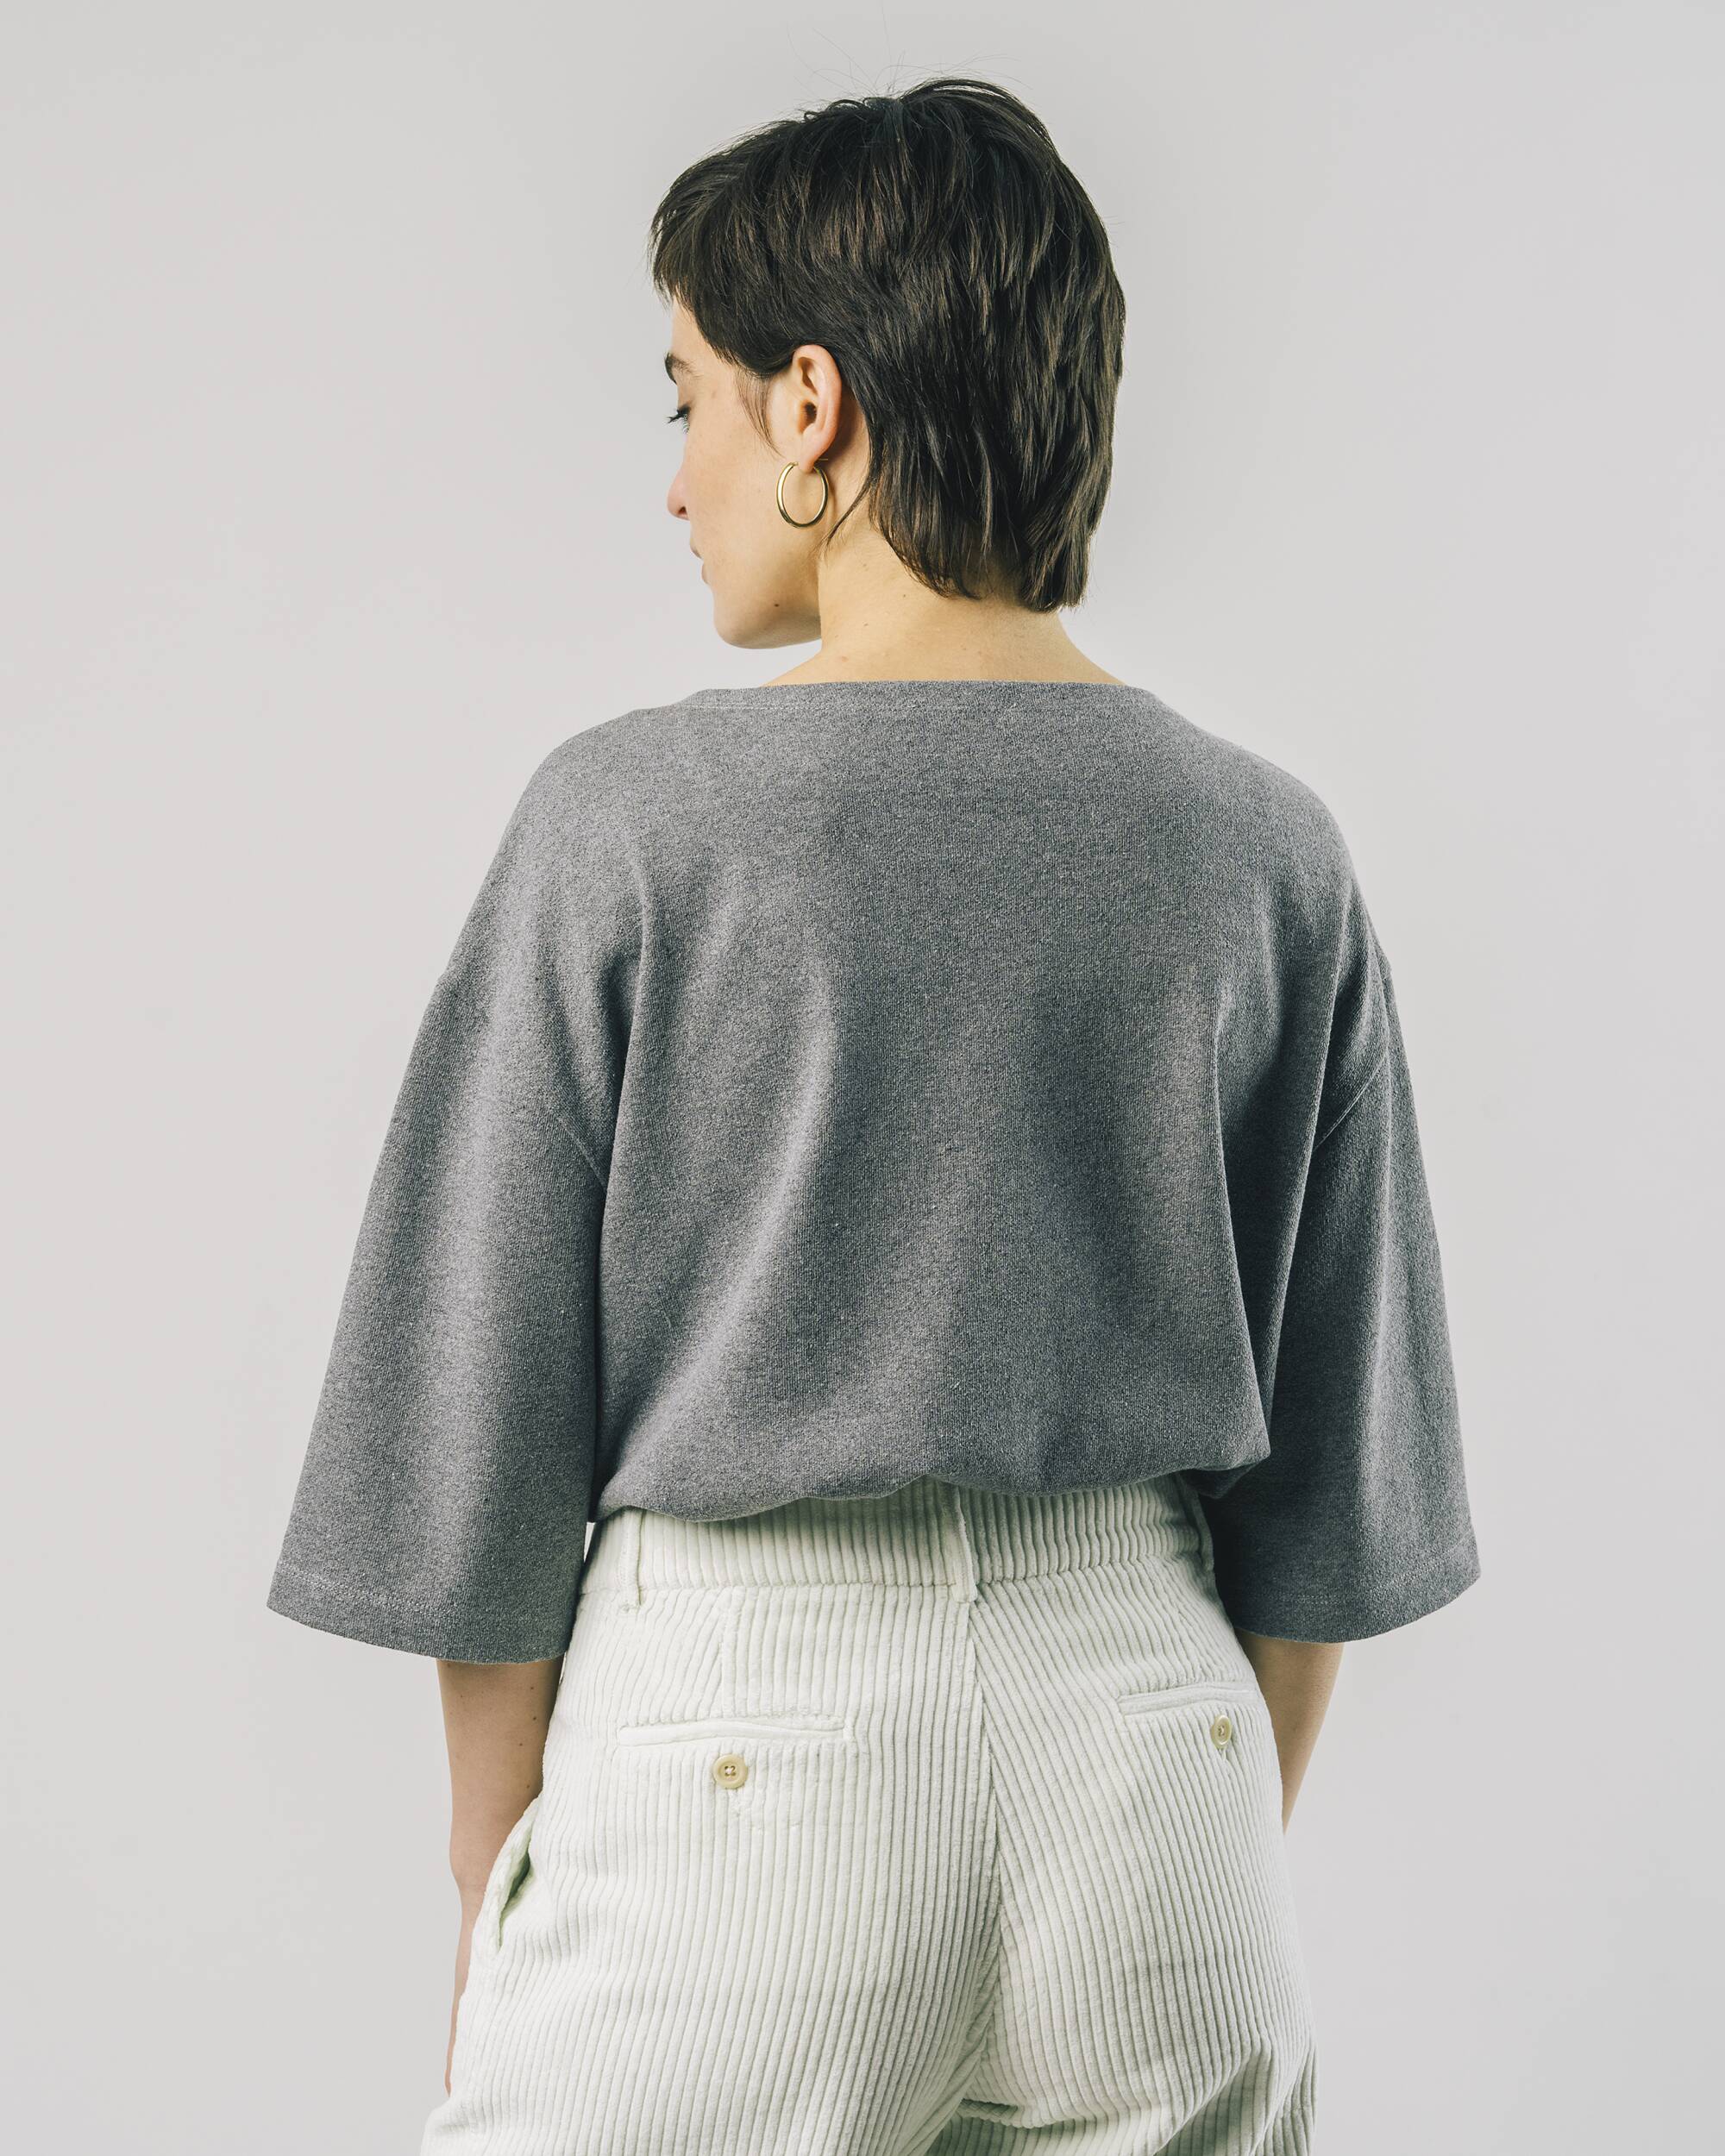 Oversized Sweatshirt "Horse" mit 3/4-Ärmeln in grau melliert aus 100% Bio - Baumwole von Brava Fabrics